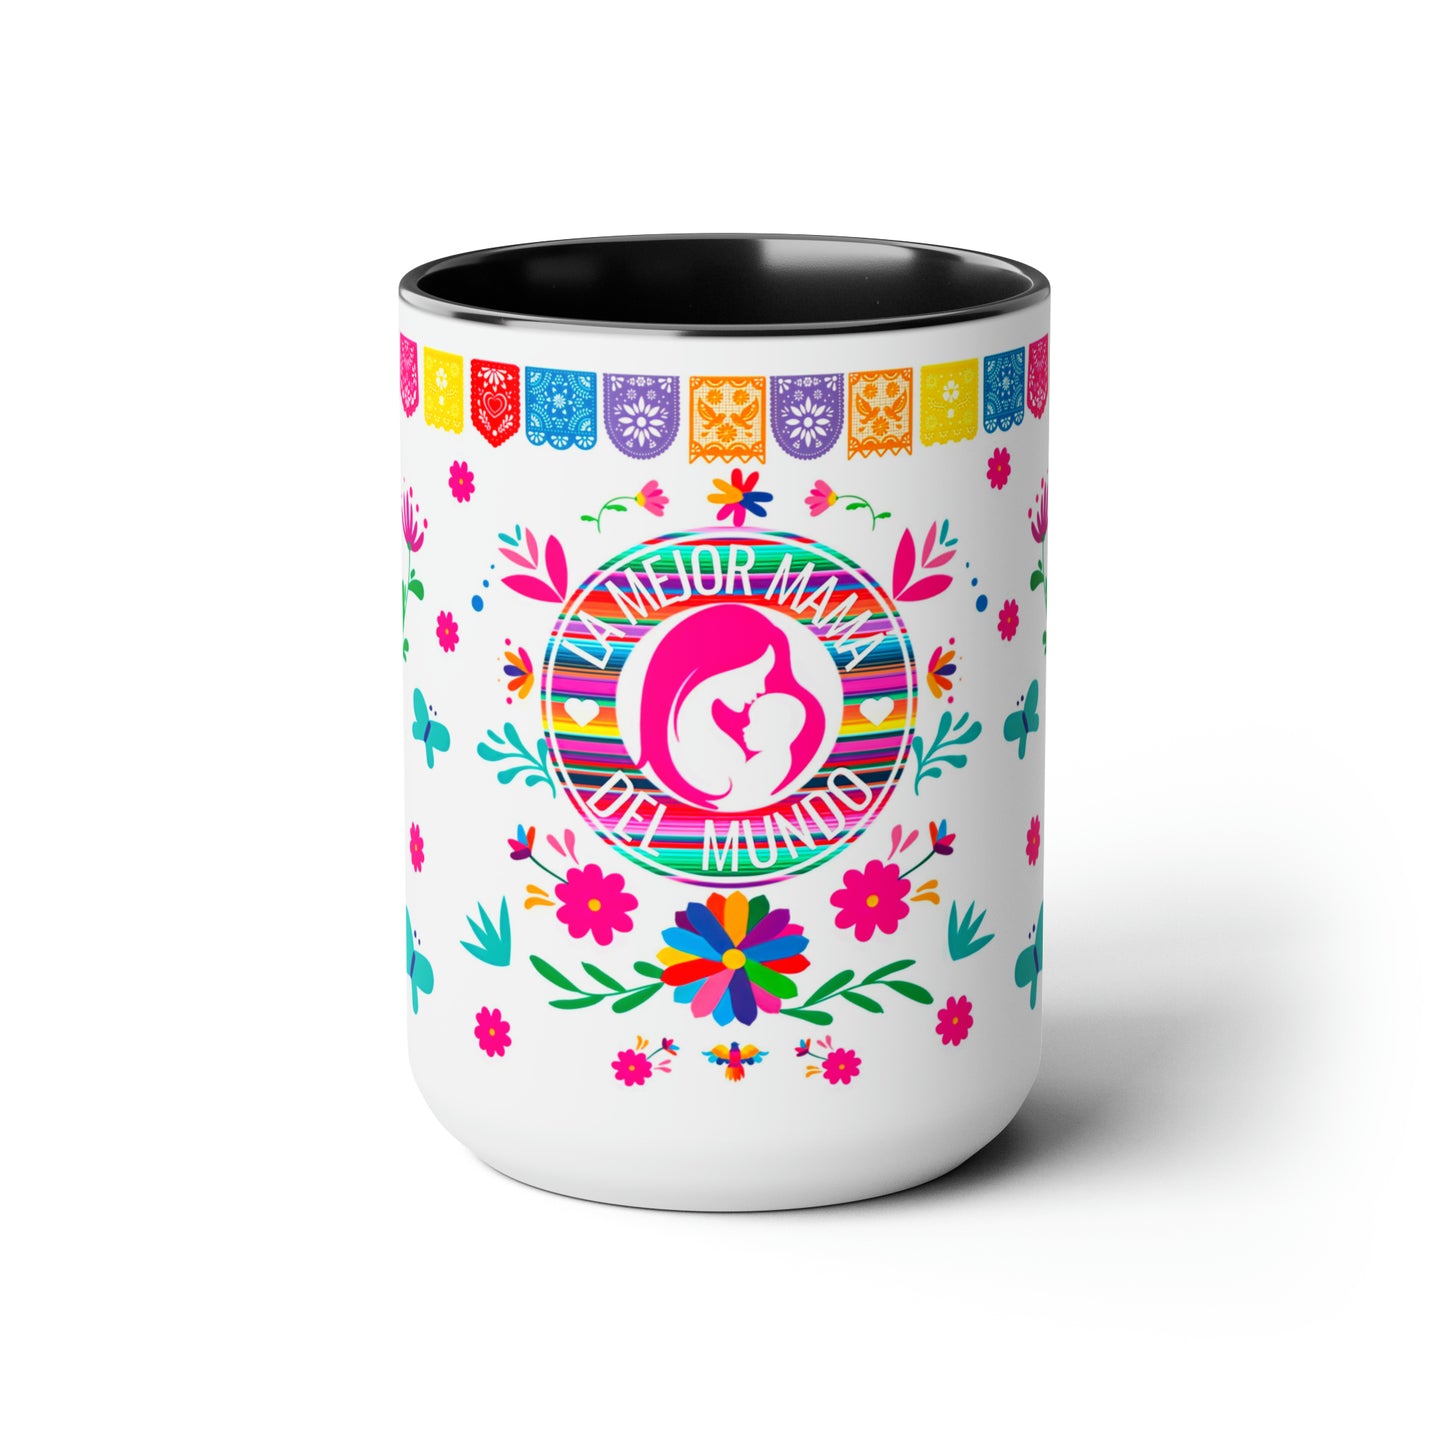 La mejor mamá del mundo Coffee Mugs, 15oz for Mexican mom or Mother’s Day. Día de las madres gift.